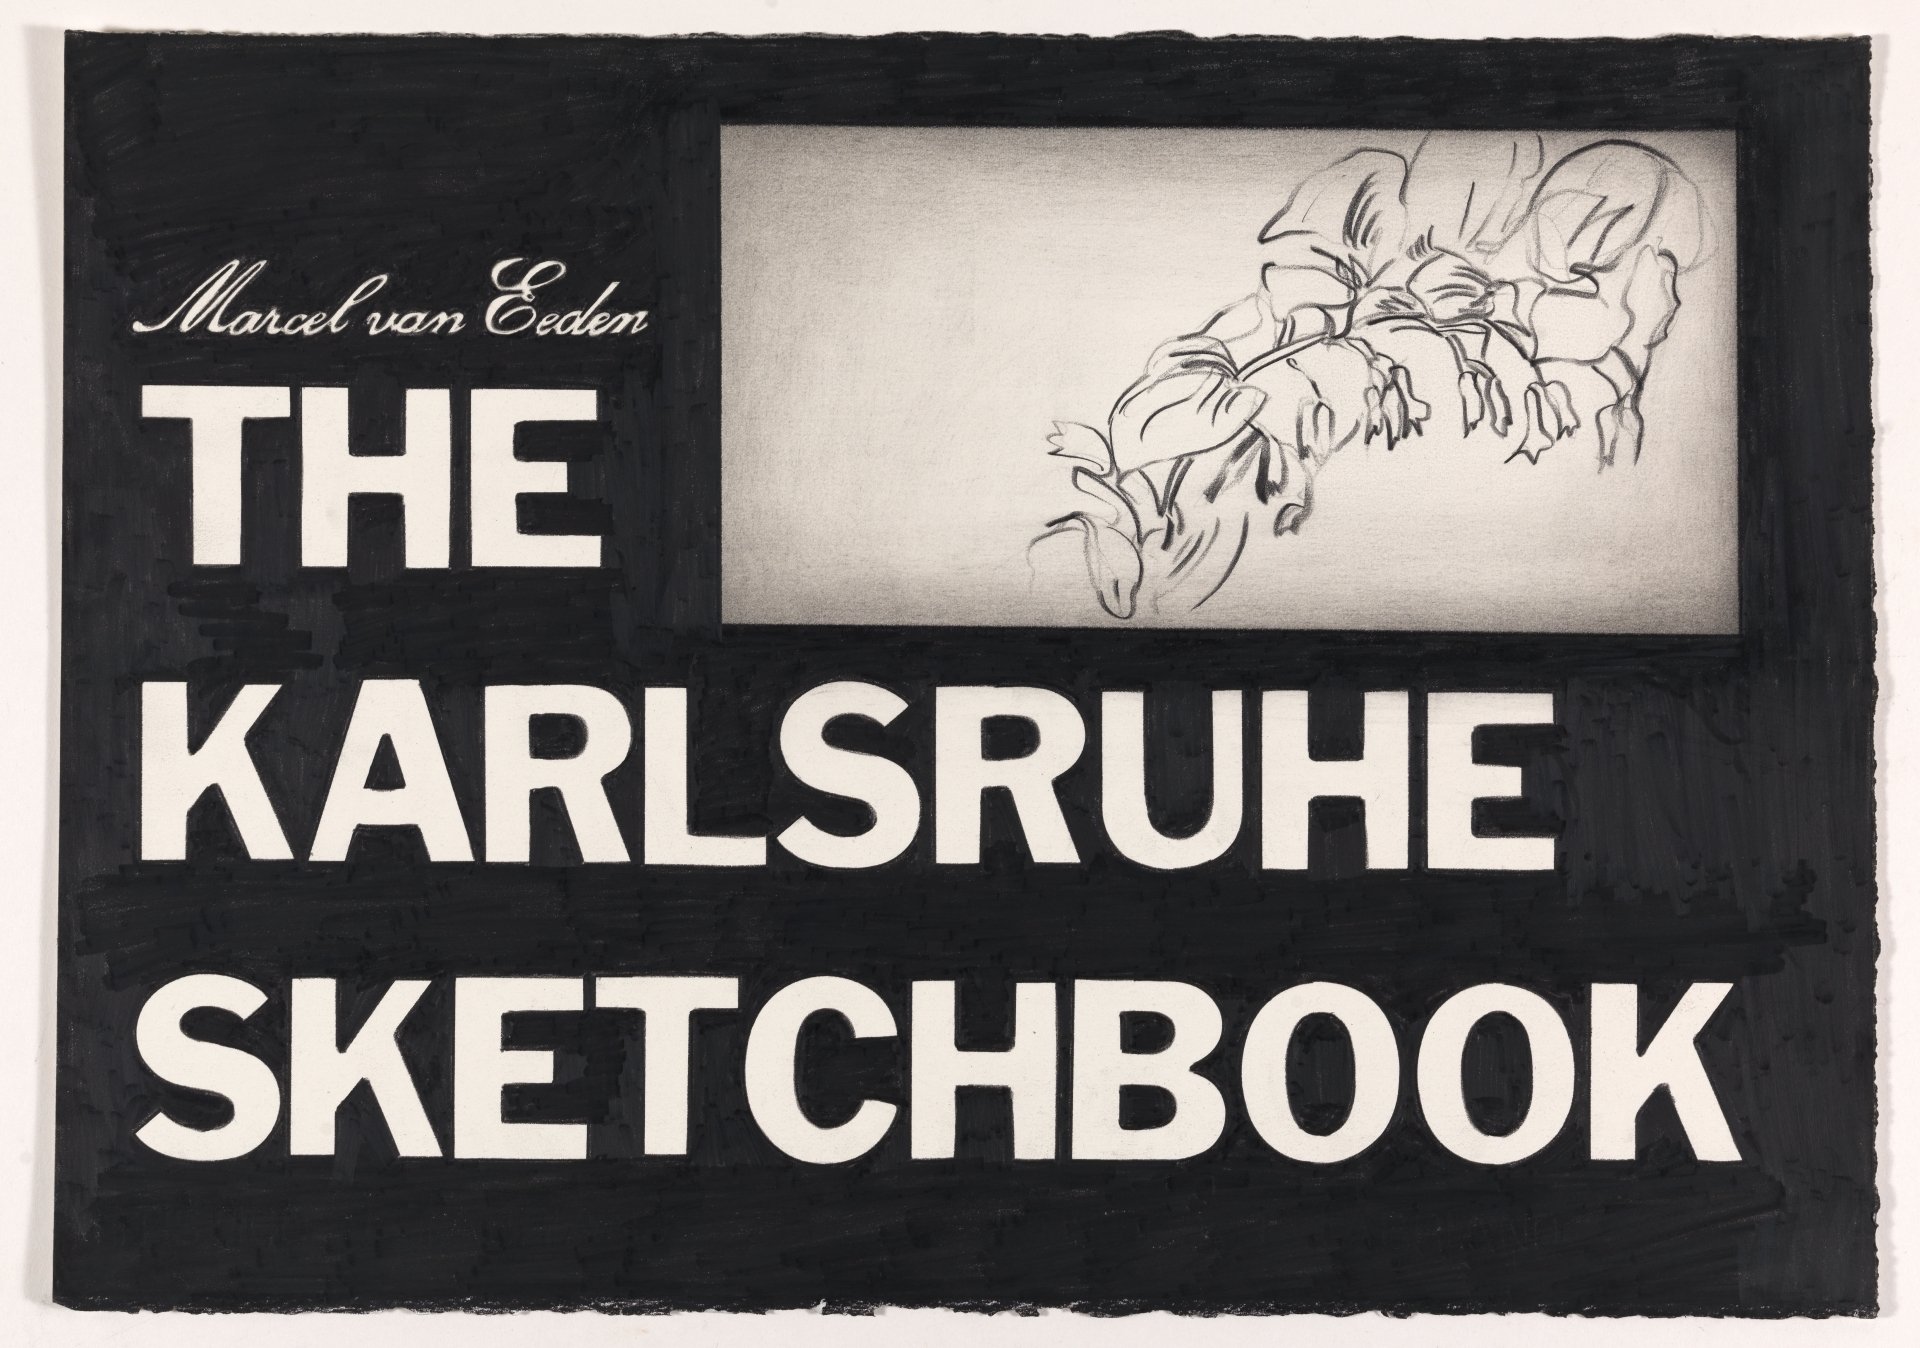 Austellungsplakat mit dem Titel: Marcel von Eeden The Karlsruhe Sketchbook.